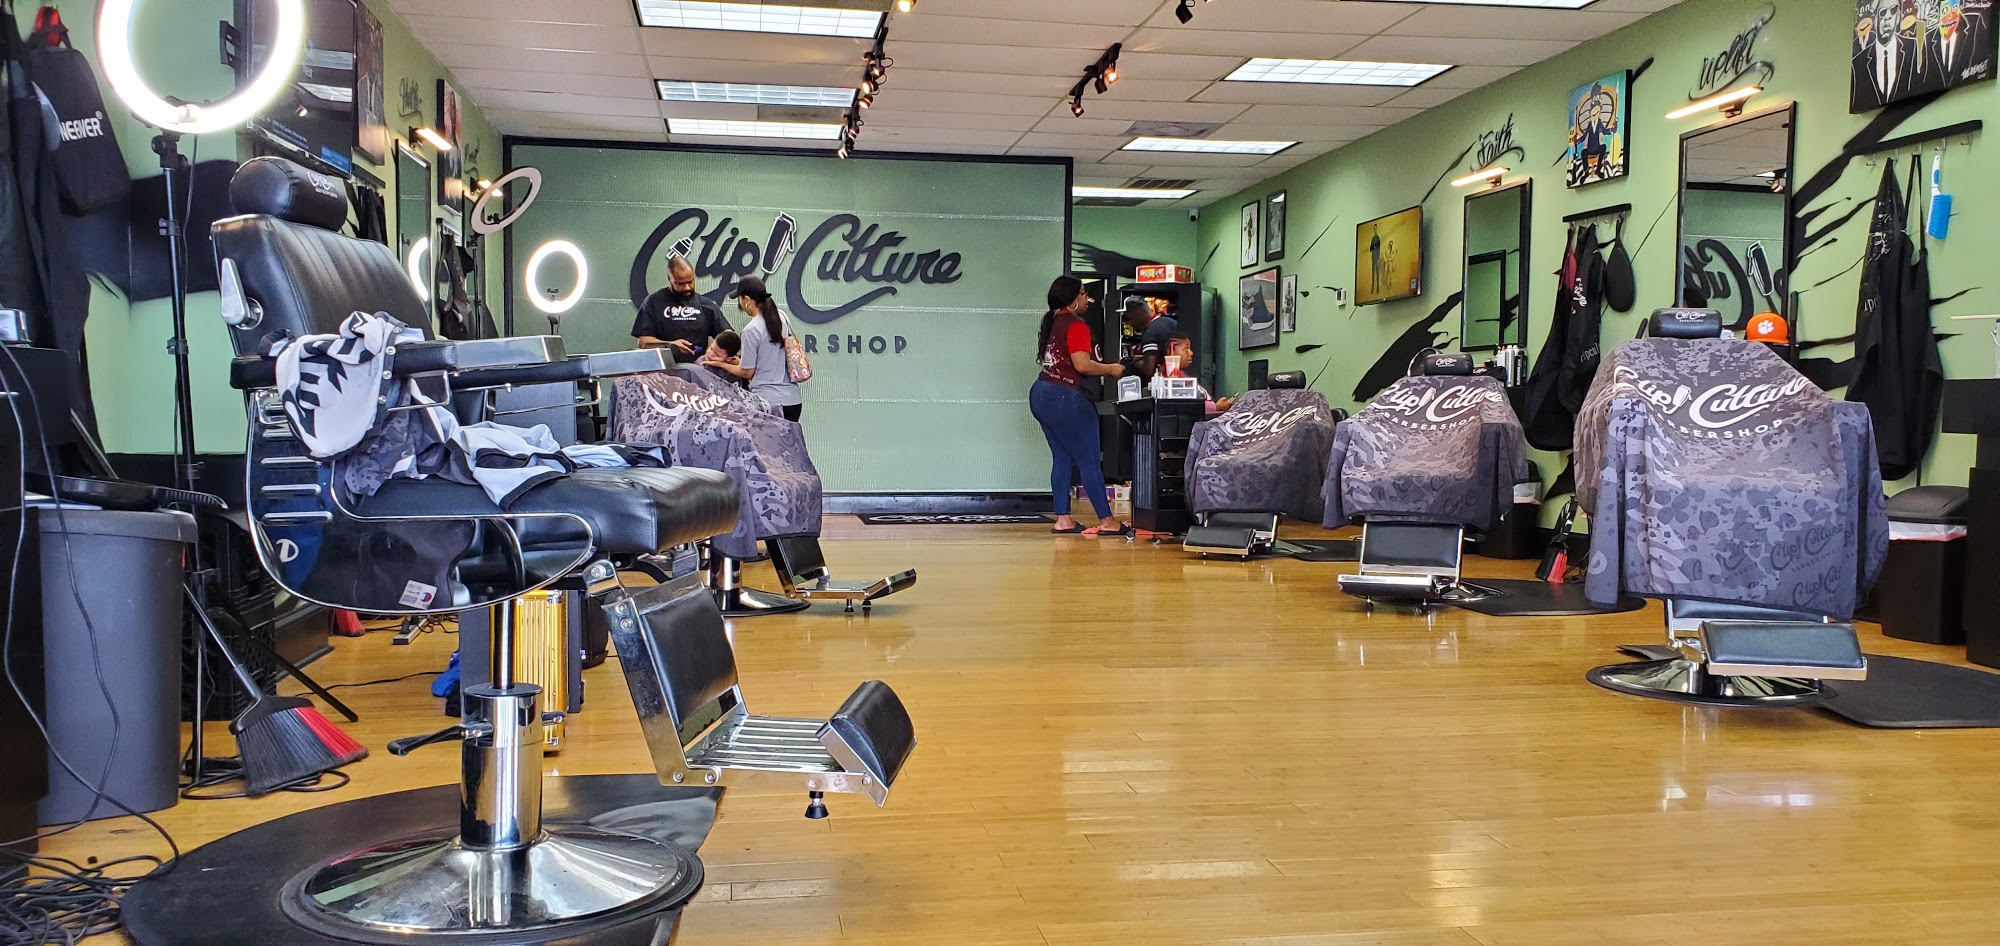 Clip Culture Barbershop